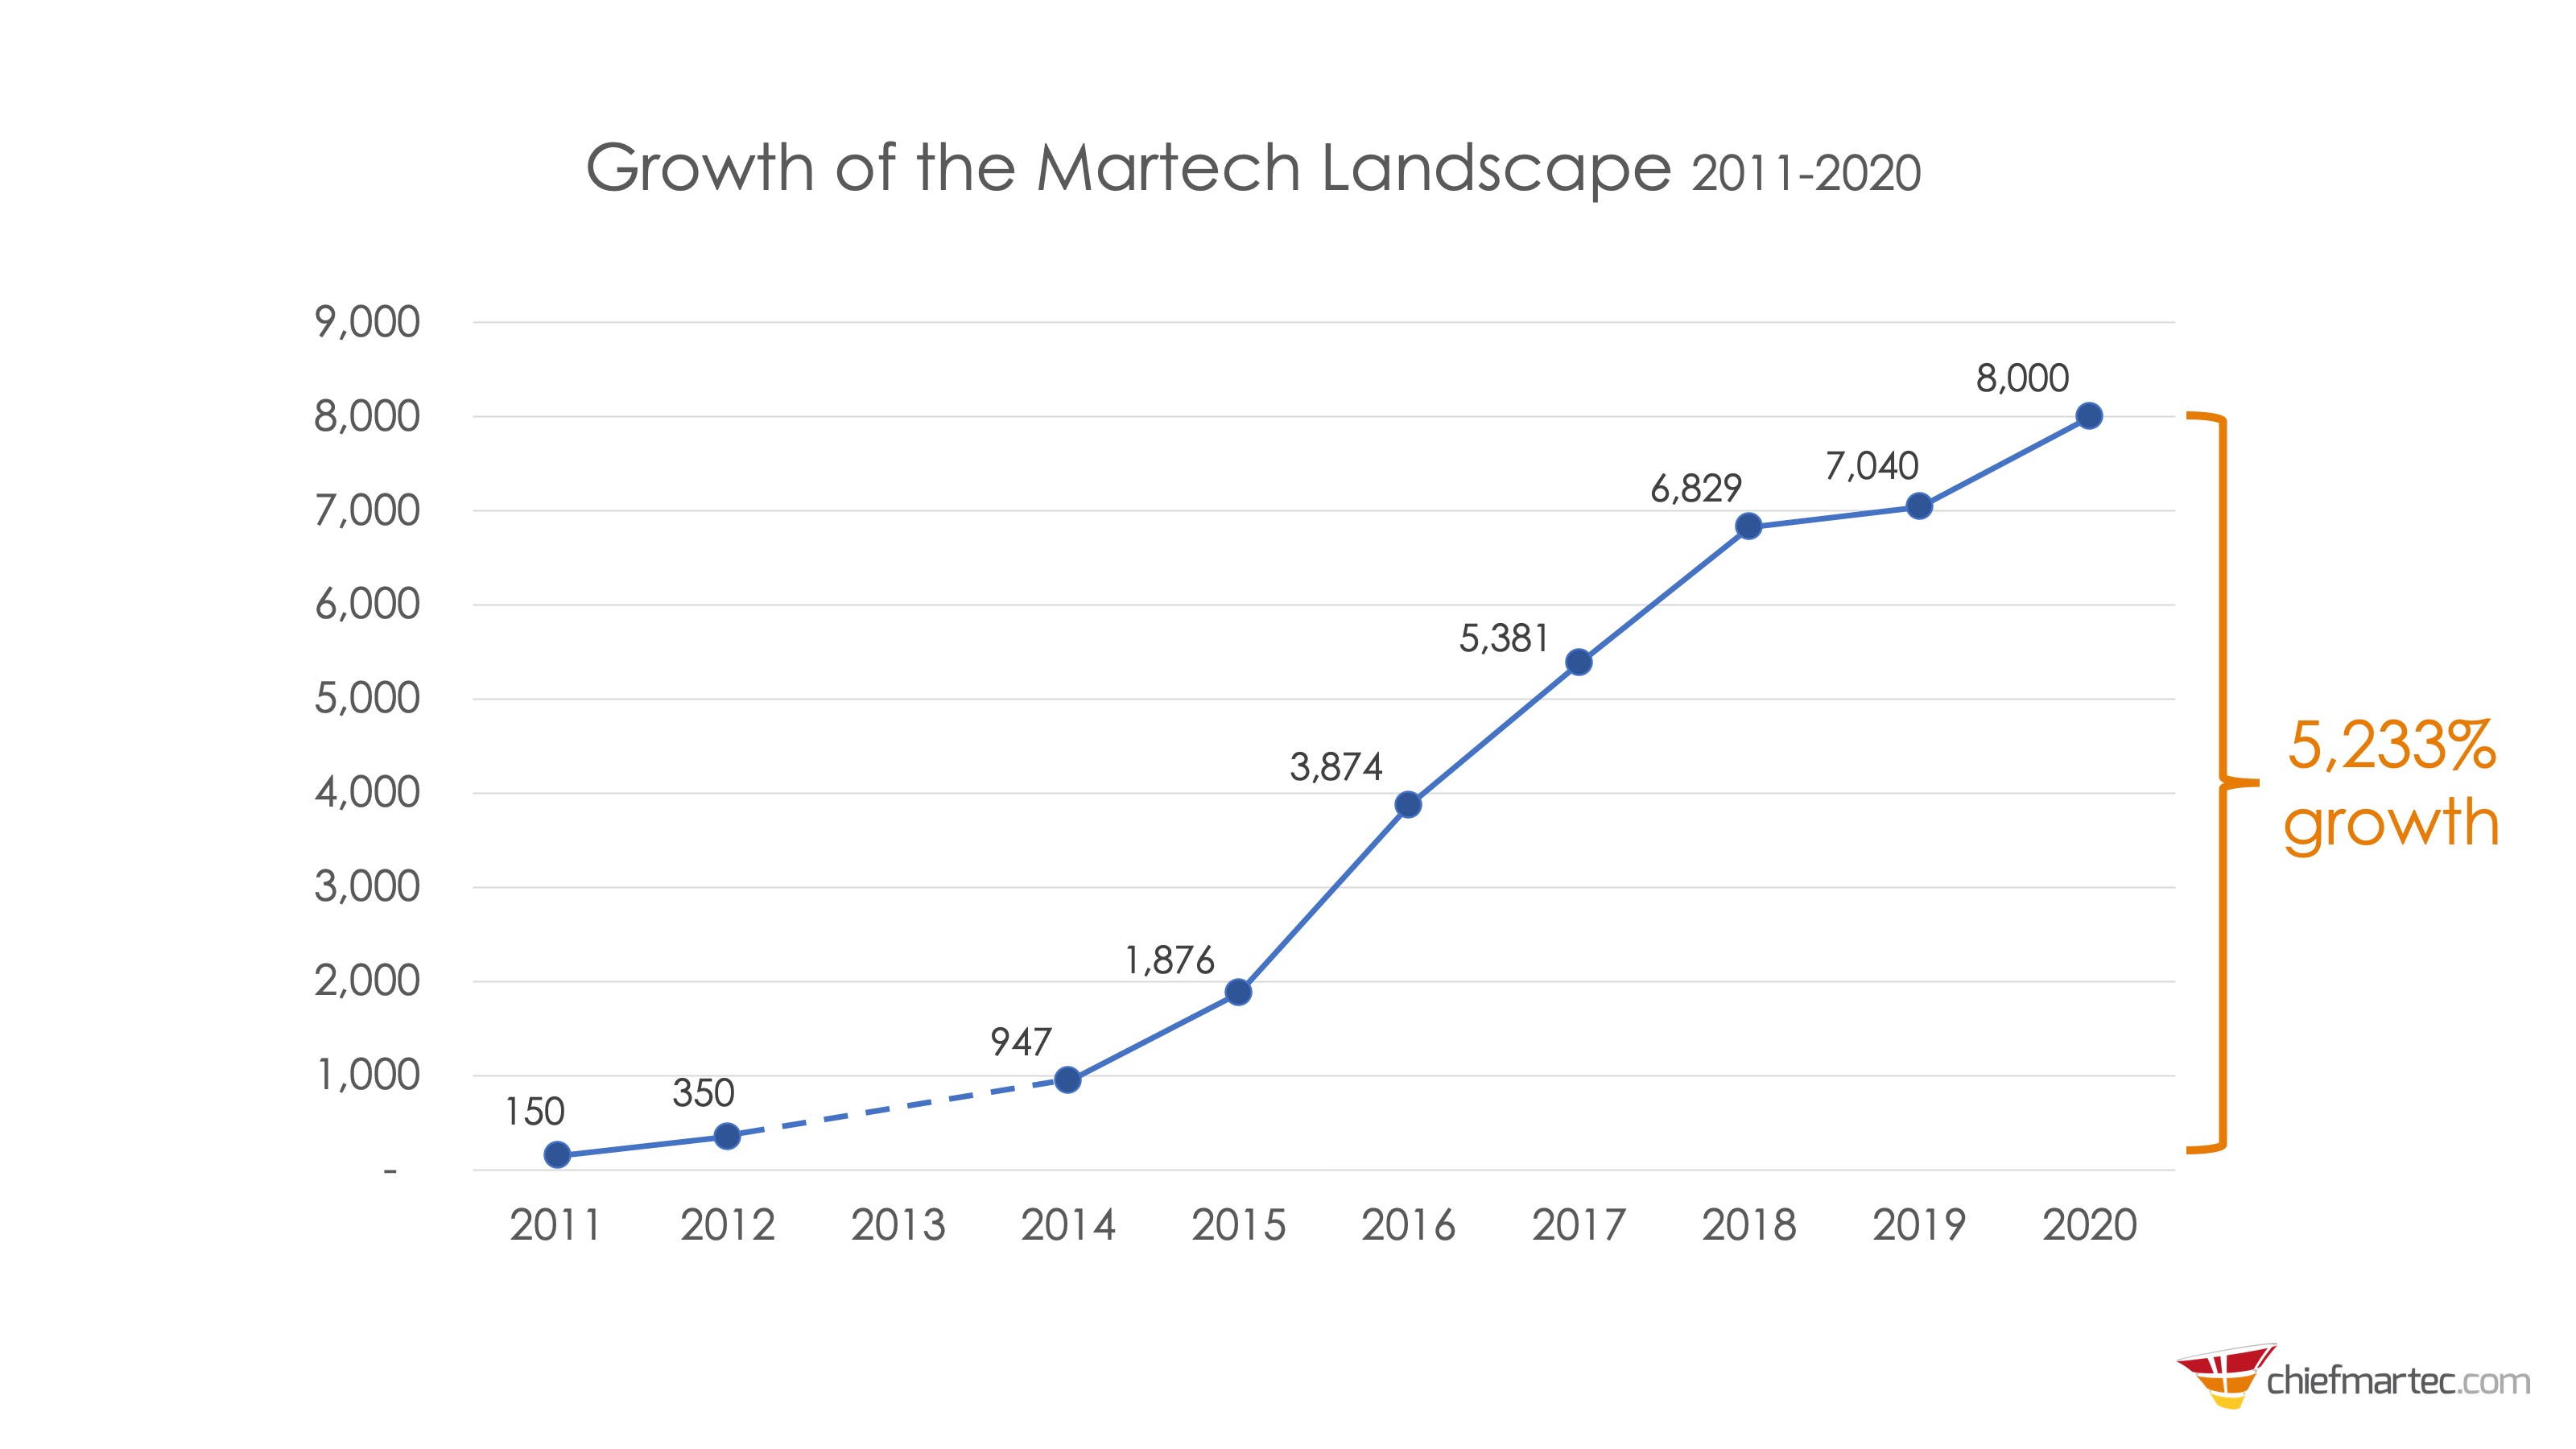 https://cdn.chiefmartec.com/wp-content/uploads/2020/04/martech-landscape-growth.jpg